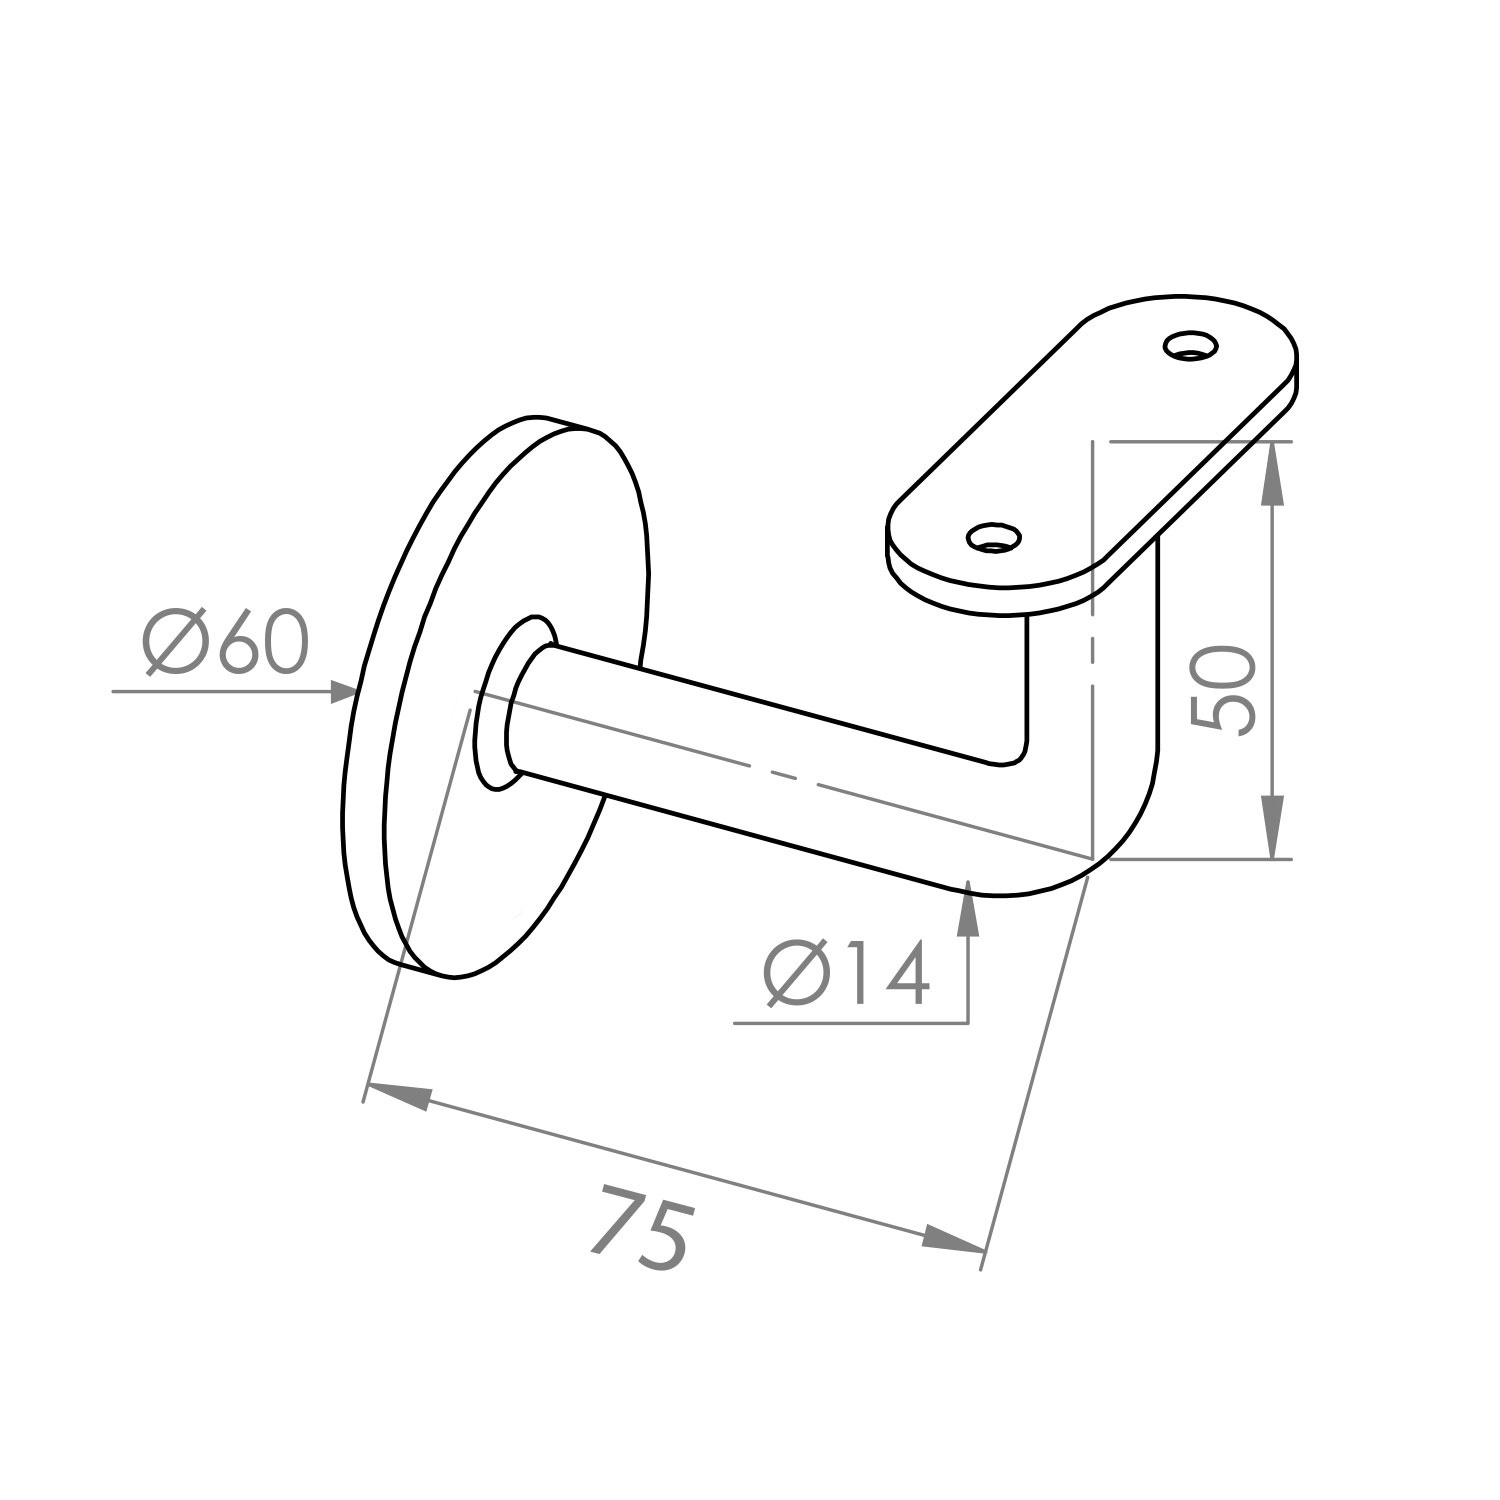  Handlauf Edelstahl viereckig 40x15 gebürstet Modell 3 - Rechteckige Edelstahl Treppengeländer - Treppenhandlauf